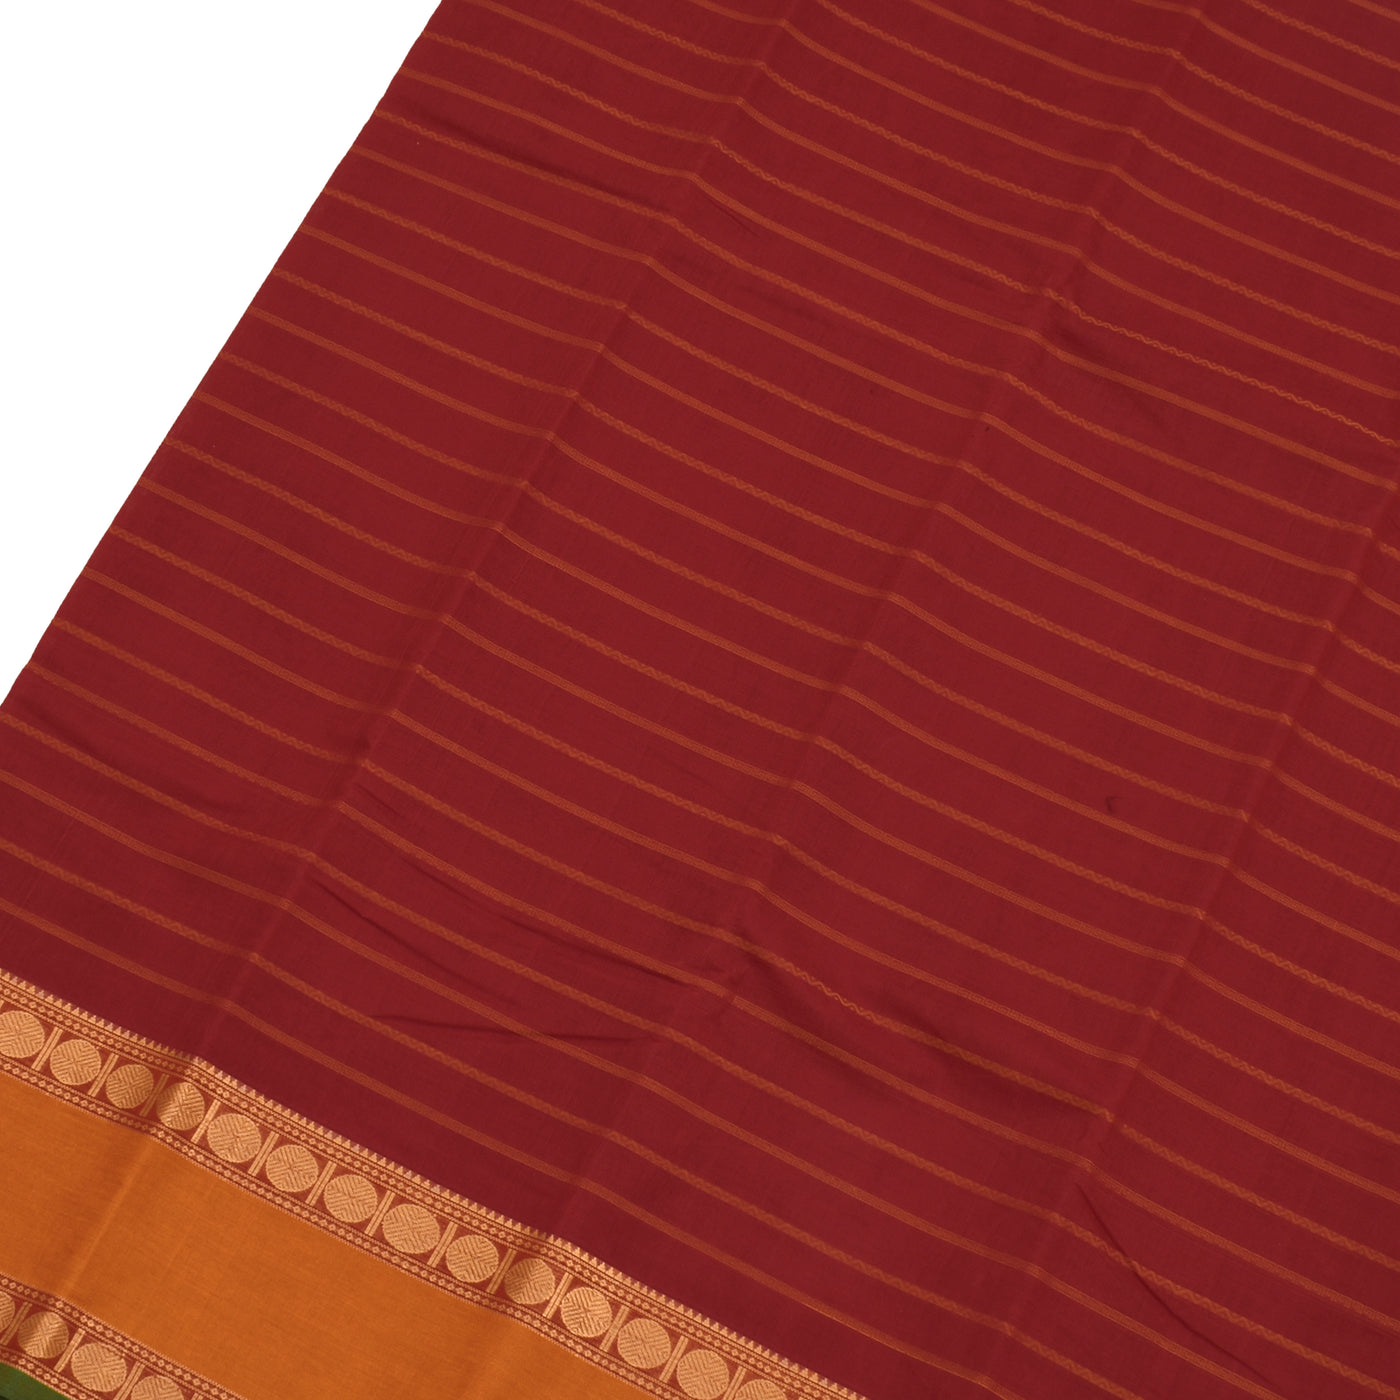 Arakku Thakkali Kanchi Cotton Saree with Stripes Design